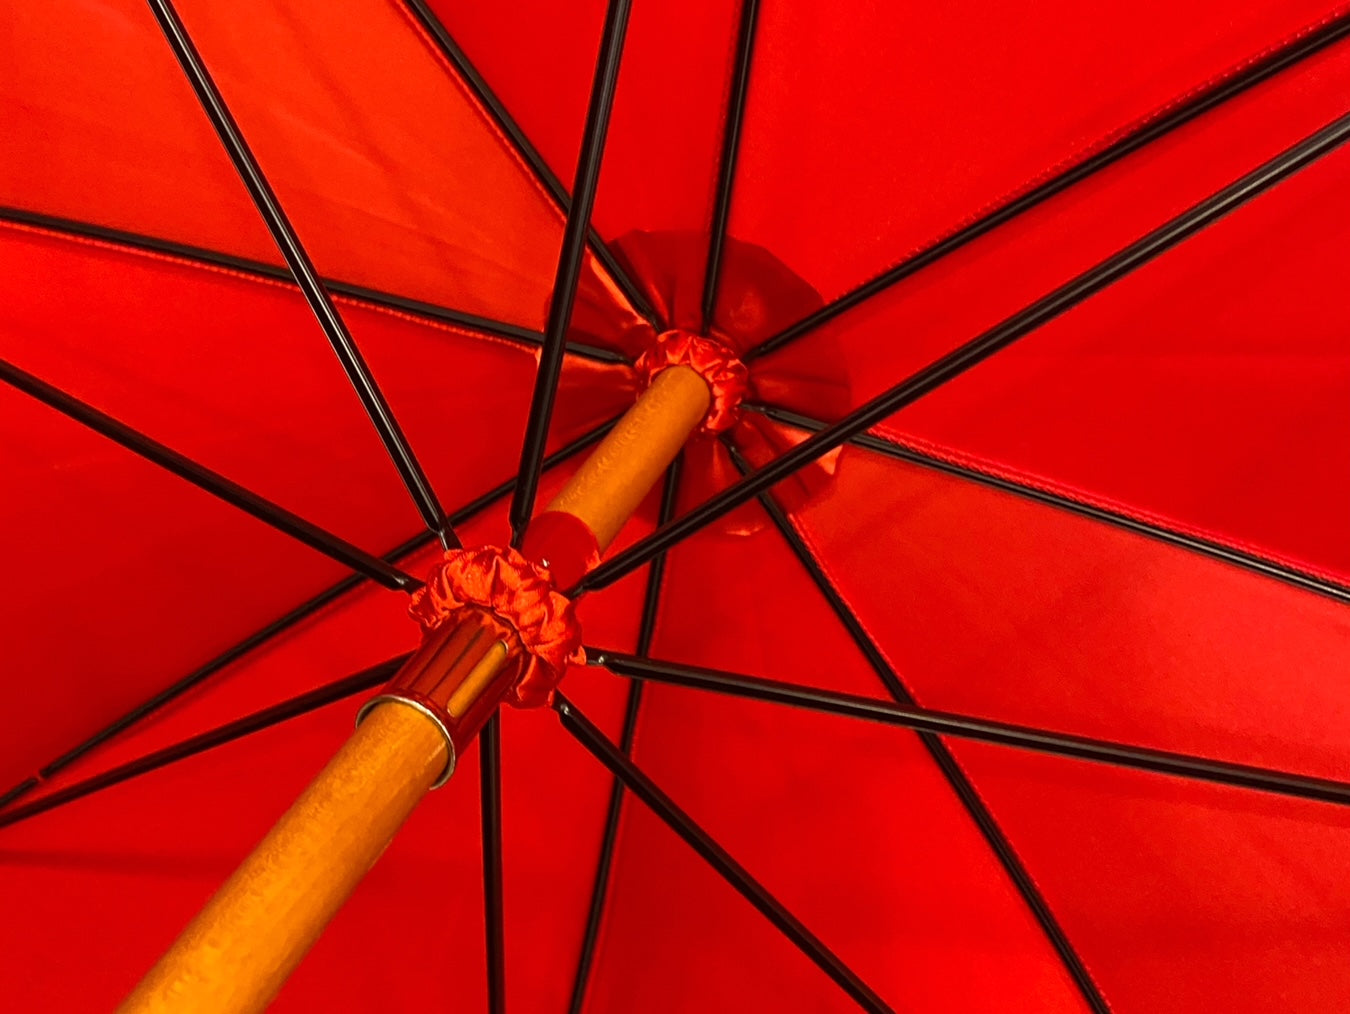 Ombrello classico Rosso lucido manico in Canna di Malacca. Lavorazione artigianale Ombrelli Domizio dal 1989 Made in Italy